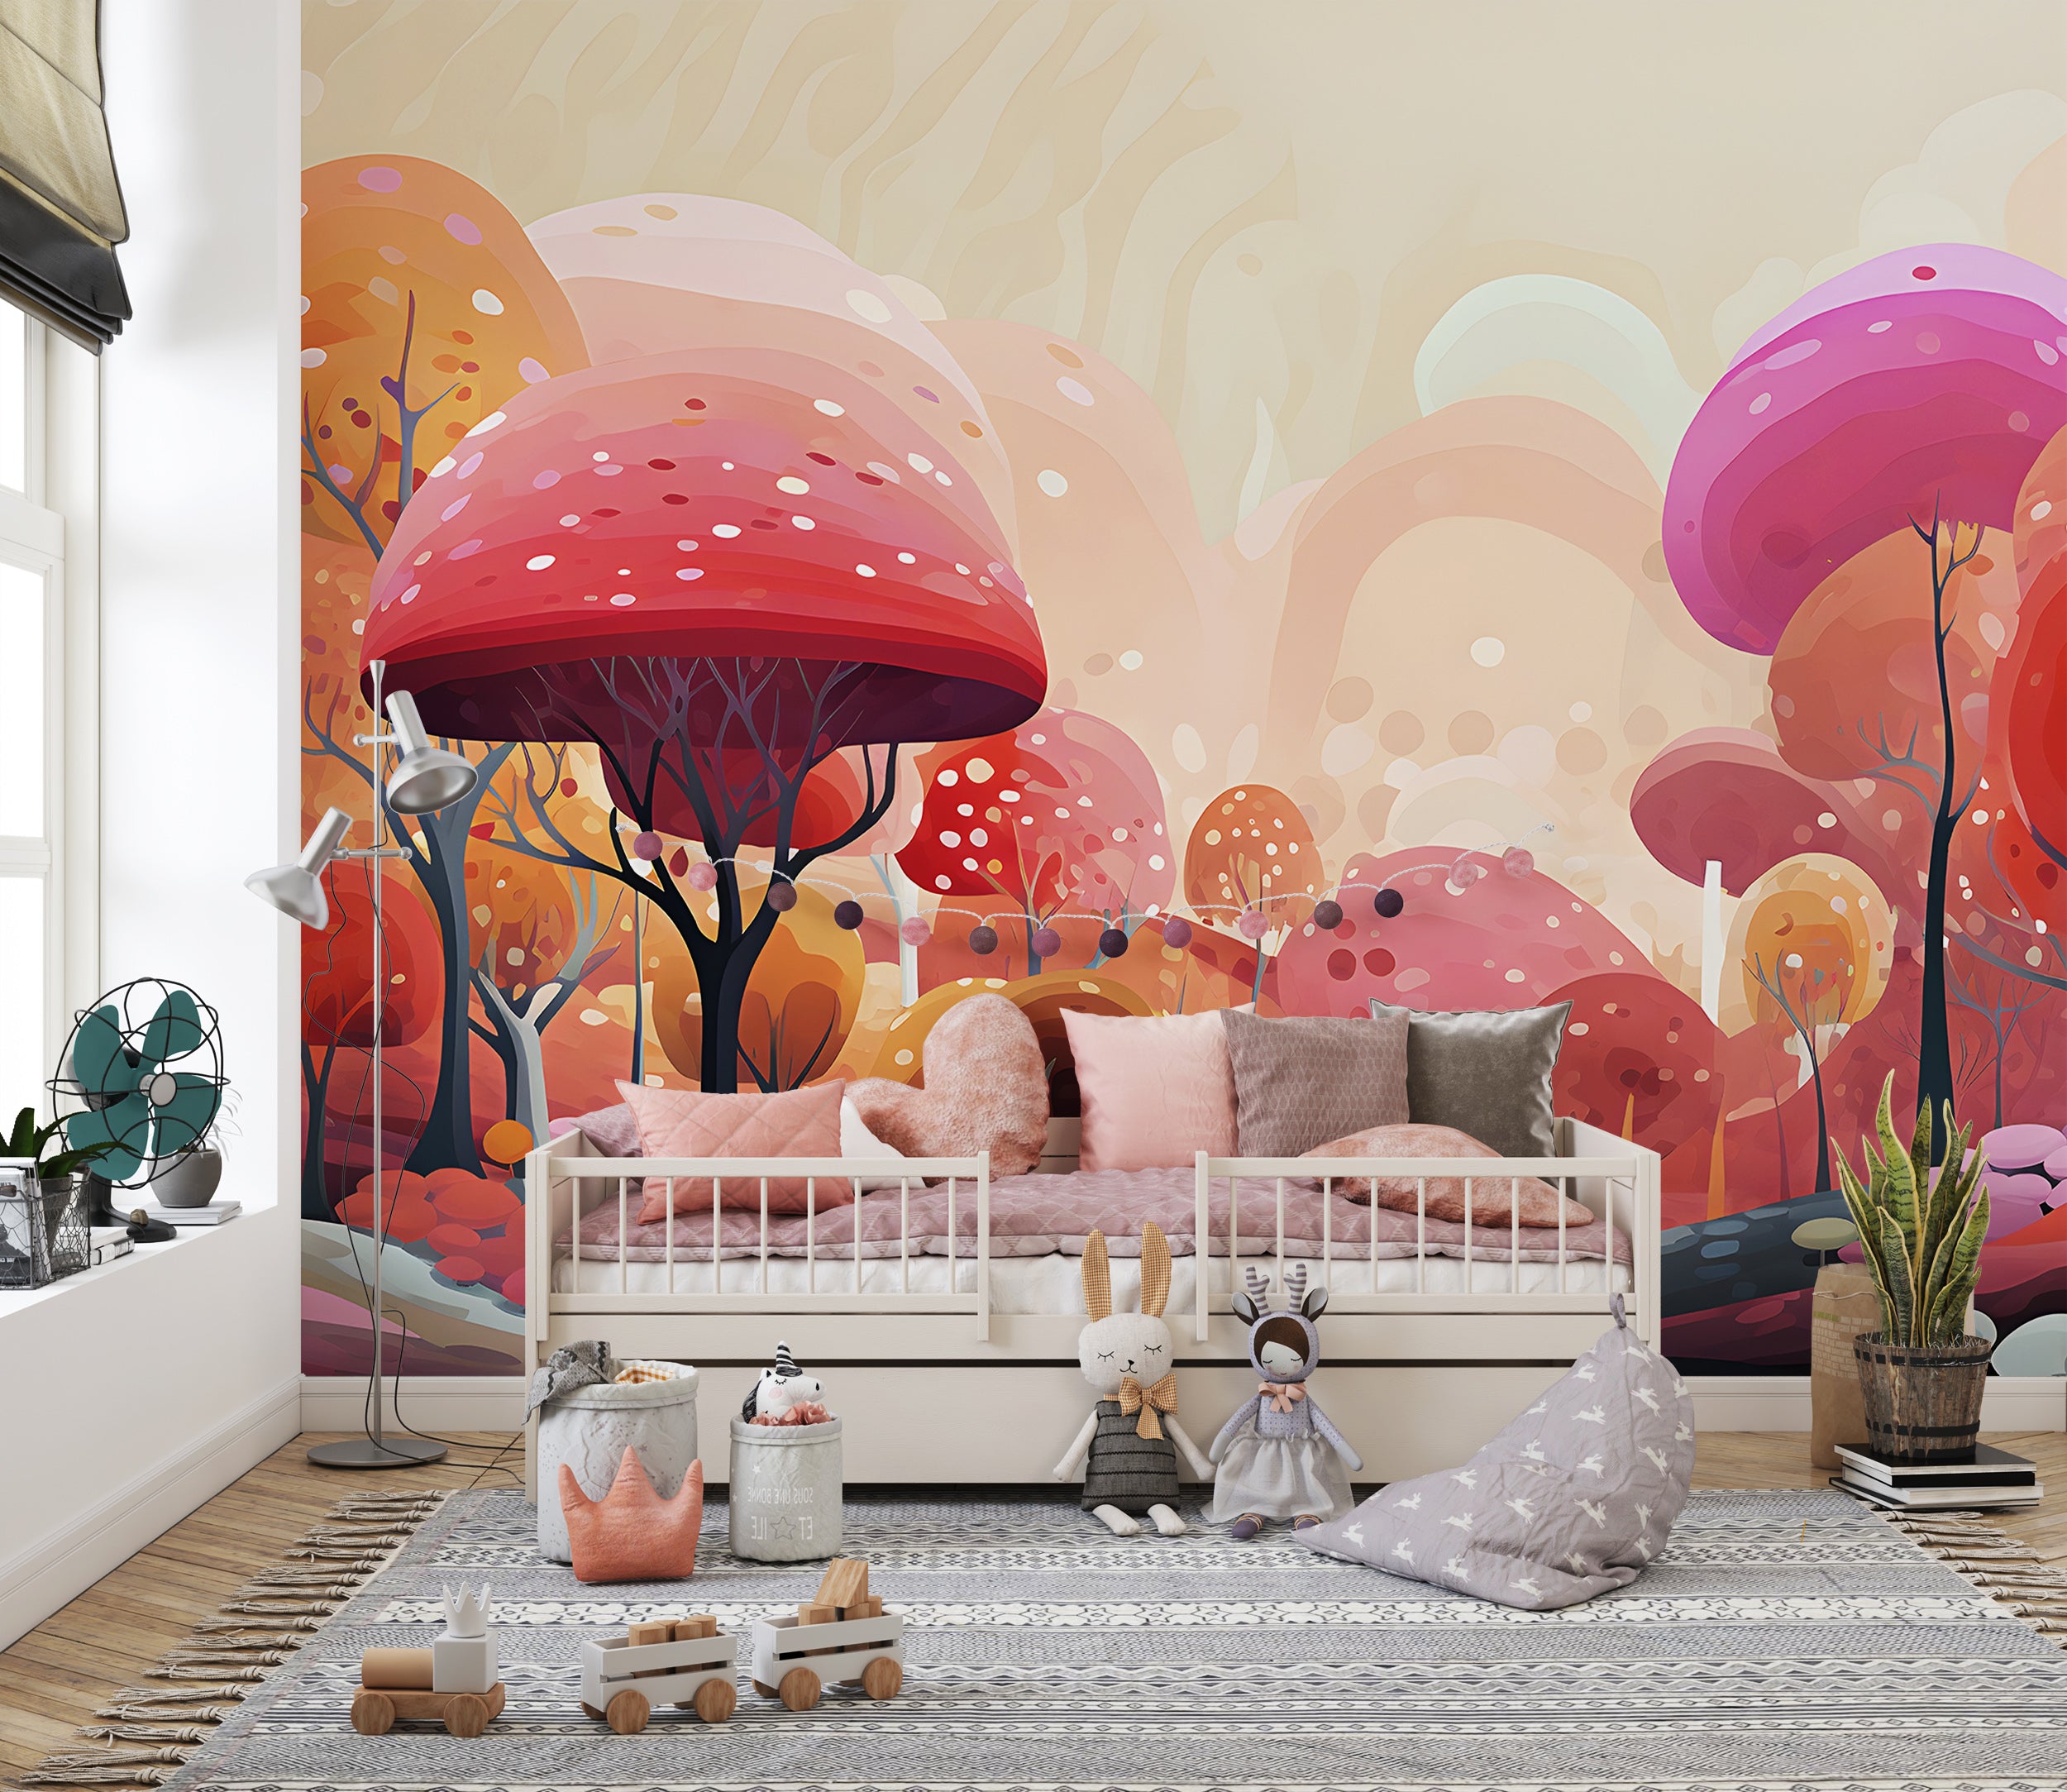 Fairytale Nursery Room Wallpaper